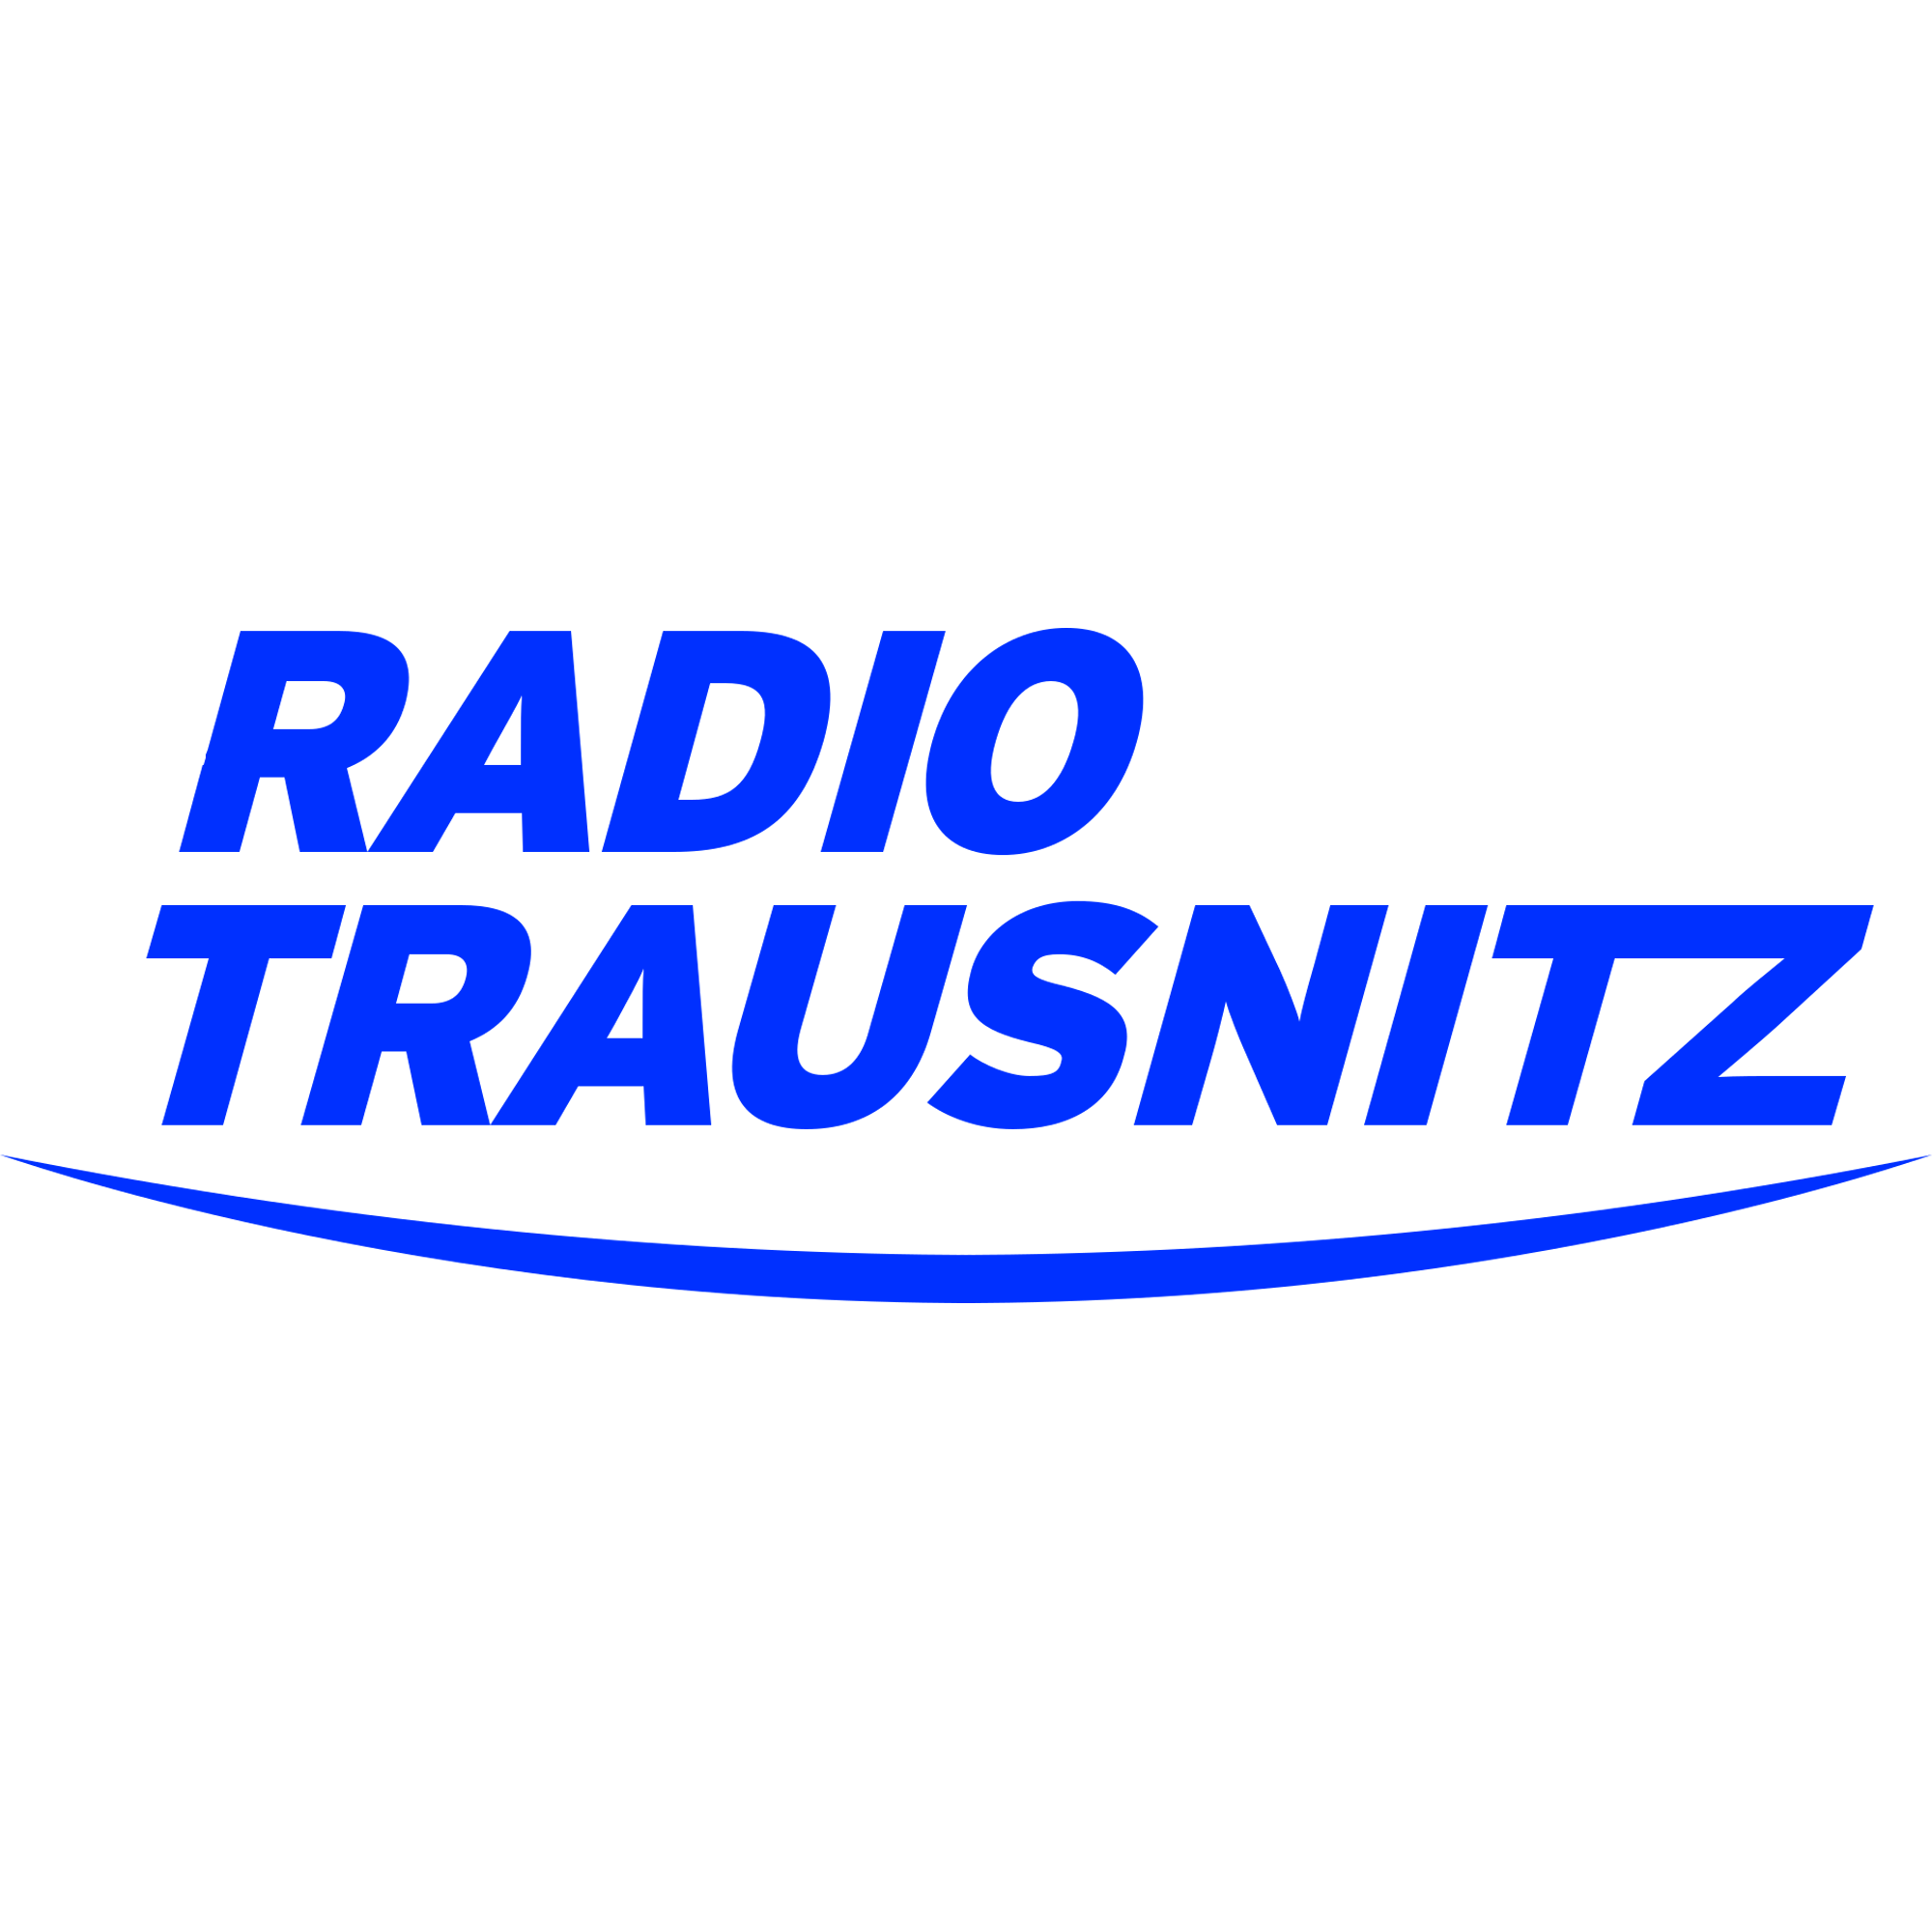 Radio Trausnitz Logo Transparent Picture